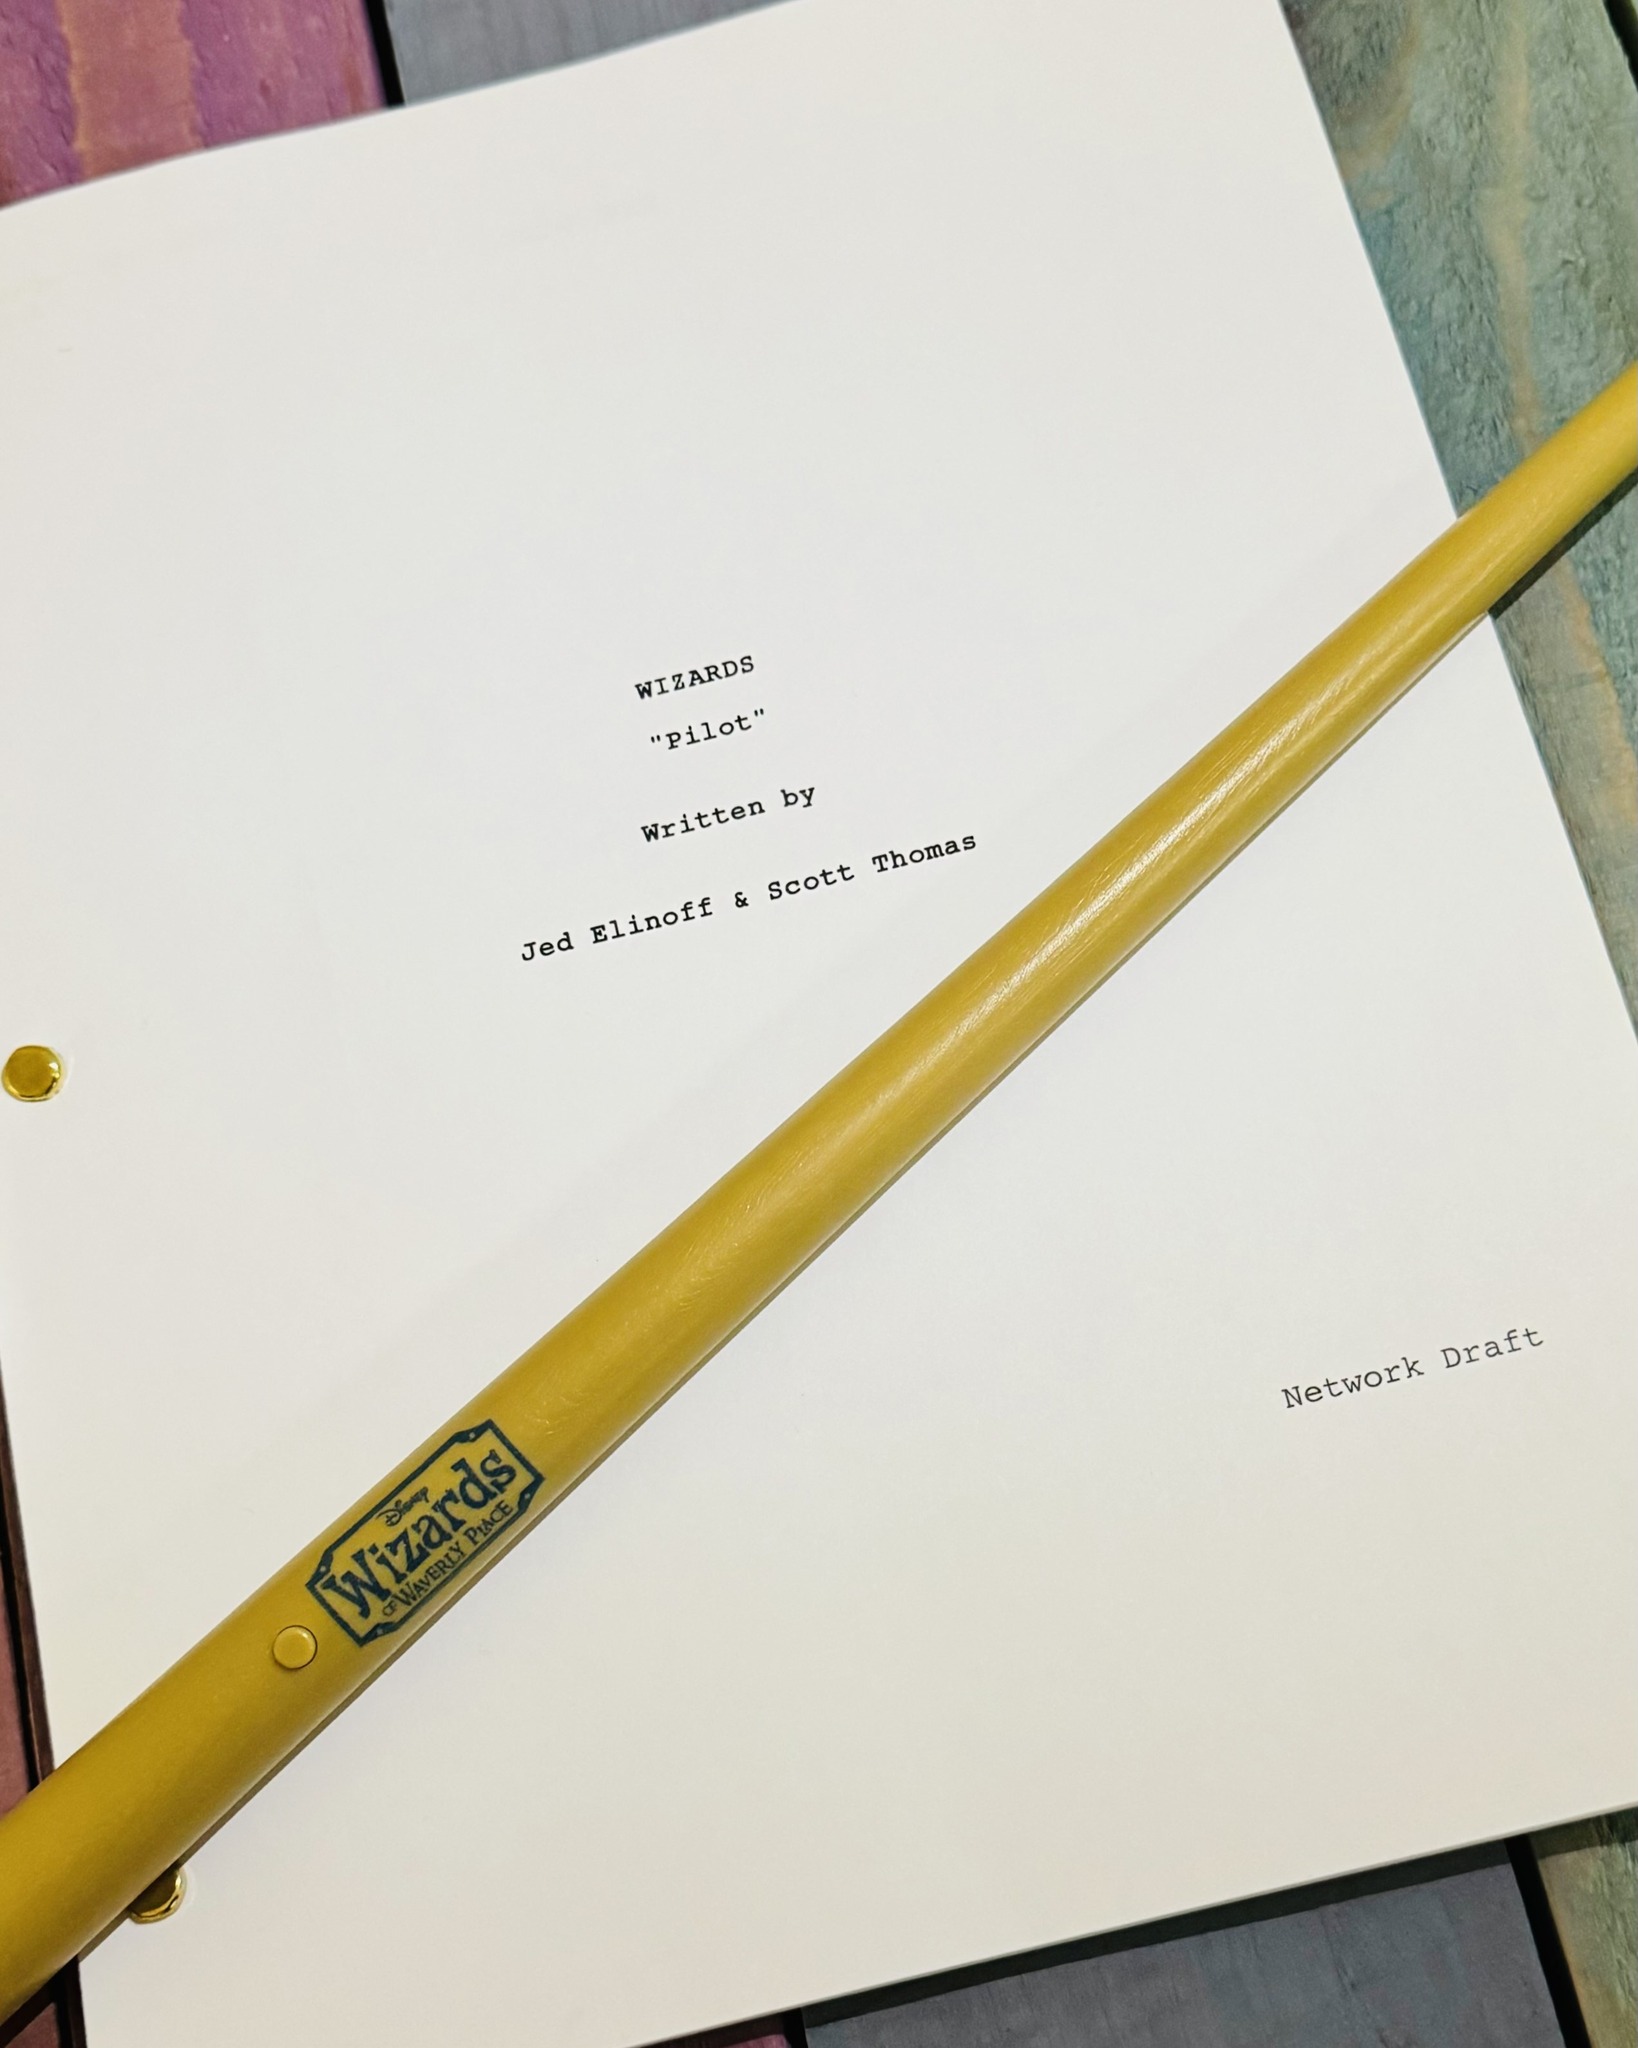 Un crayon jaune repose sur un morceau de papier dans le monde magique de Waverly Place, où les sorciers se promènent librement.